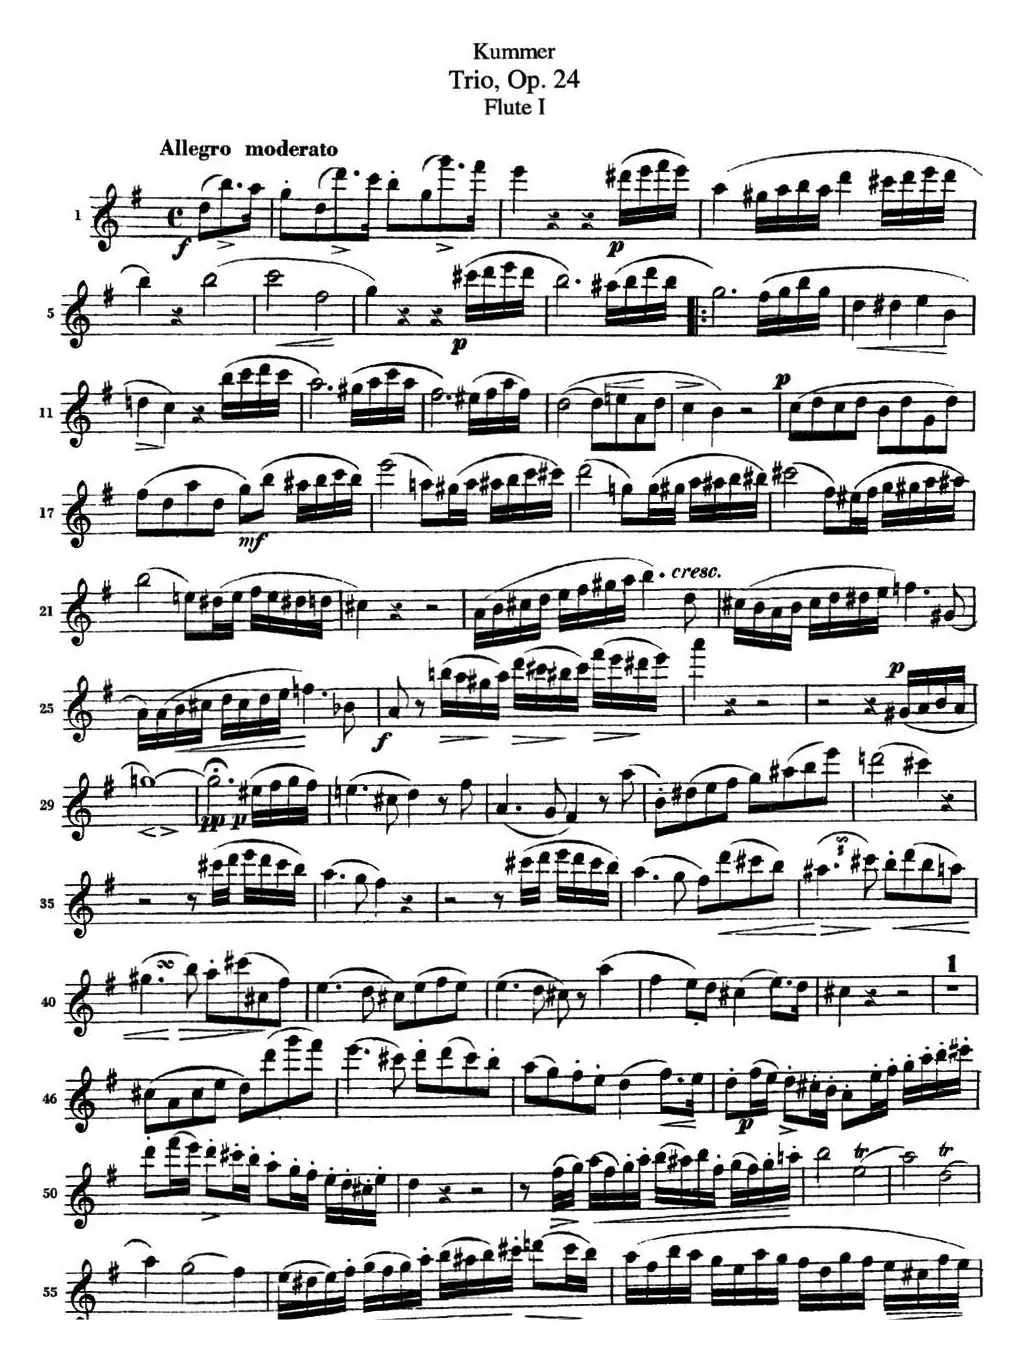 库默长笛三重奏Op.24（Flute 1）